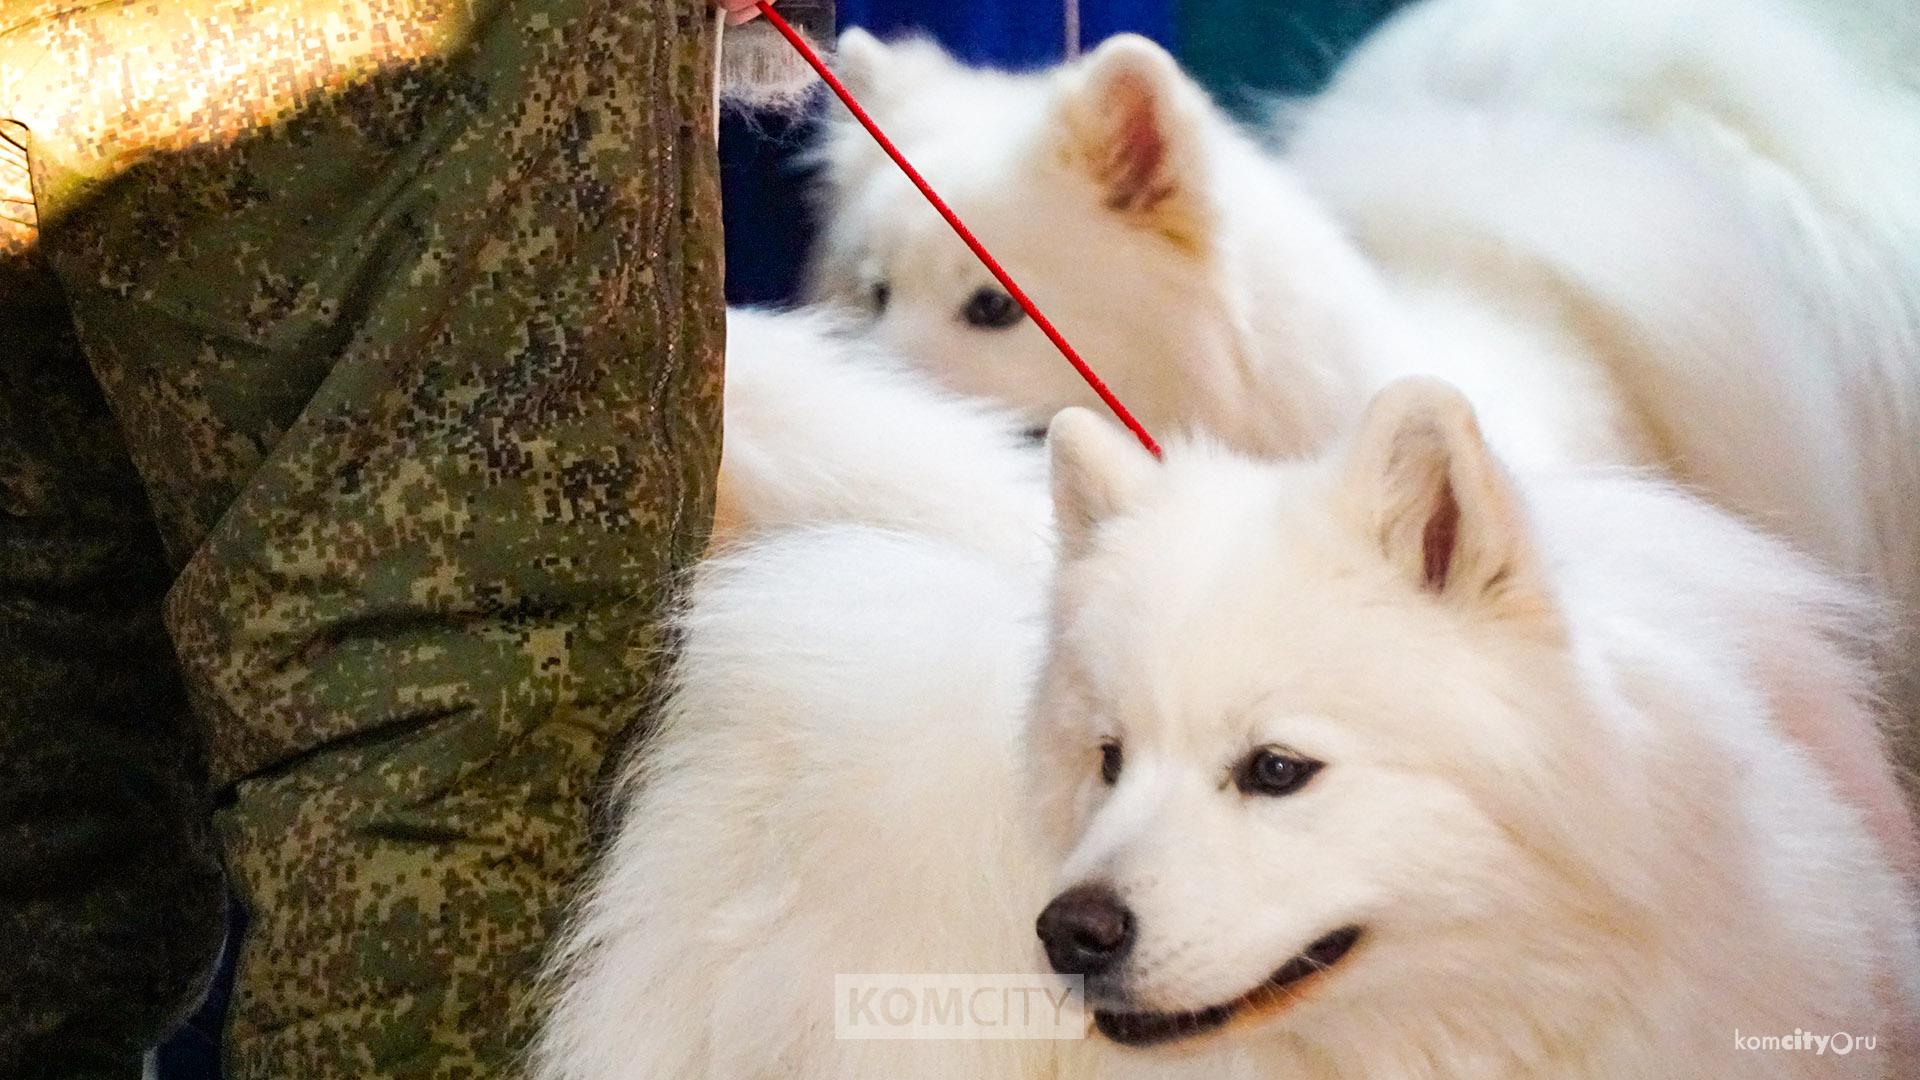 Ротвейлер, самоед и овчарка стали лучшими собаками на новогодних выставках в Комсомольске